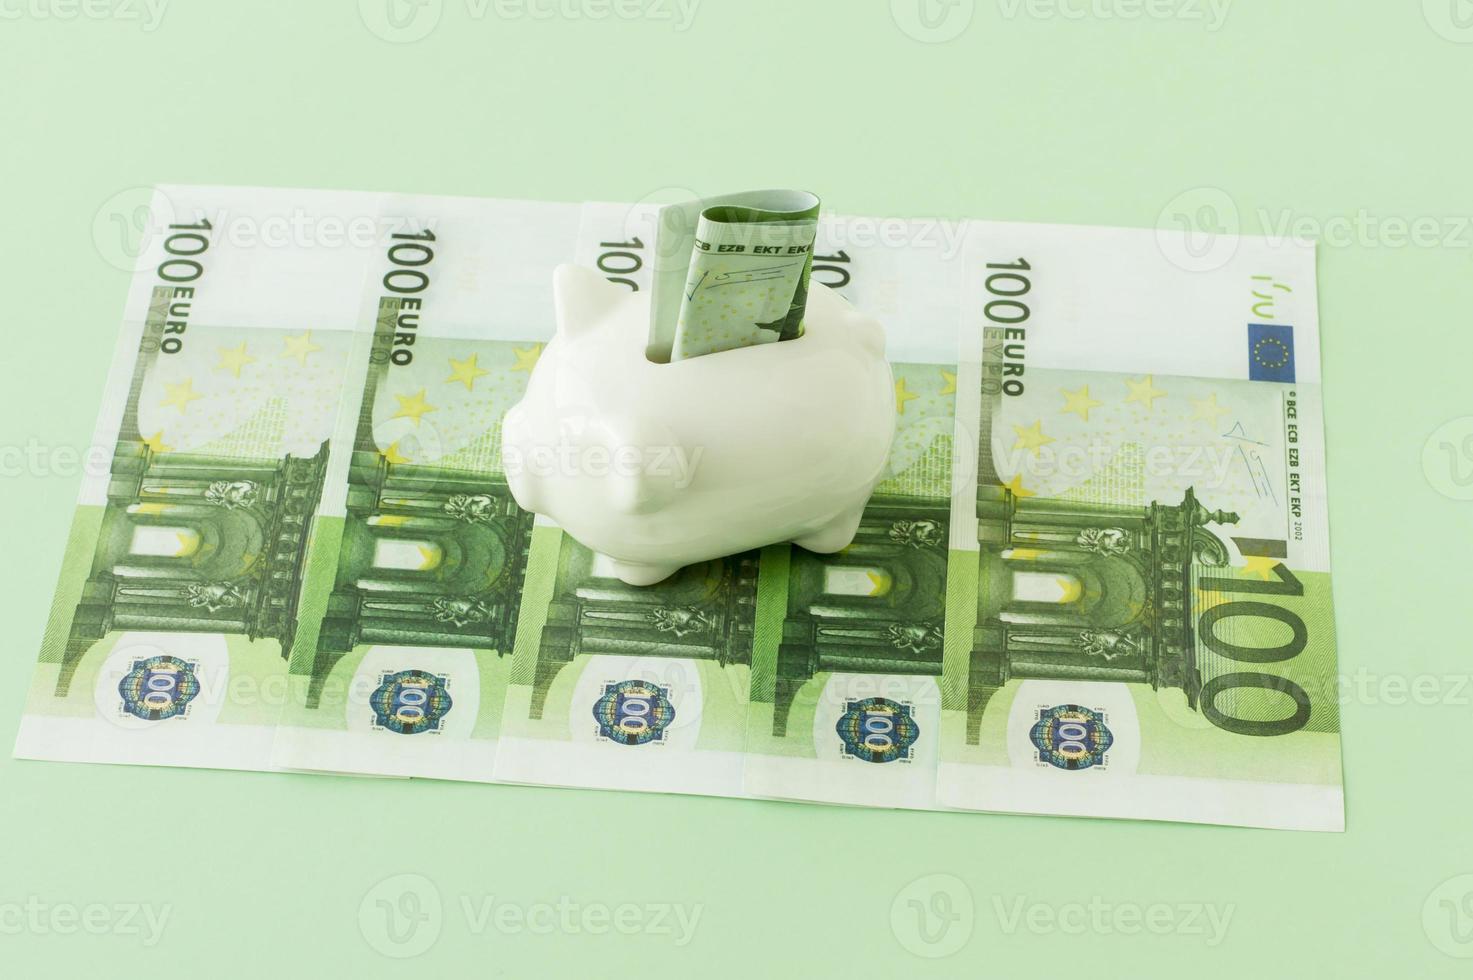 notas de moeda europeia em 100 euros em um fundo verde com um cofrinho de porcelana branca nas notas. foto